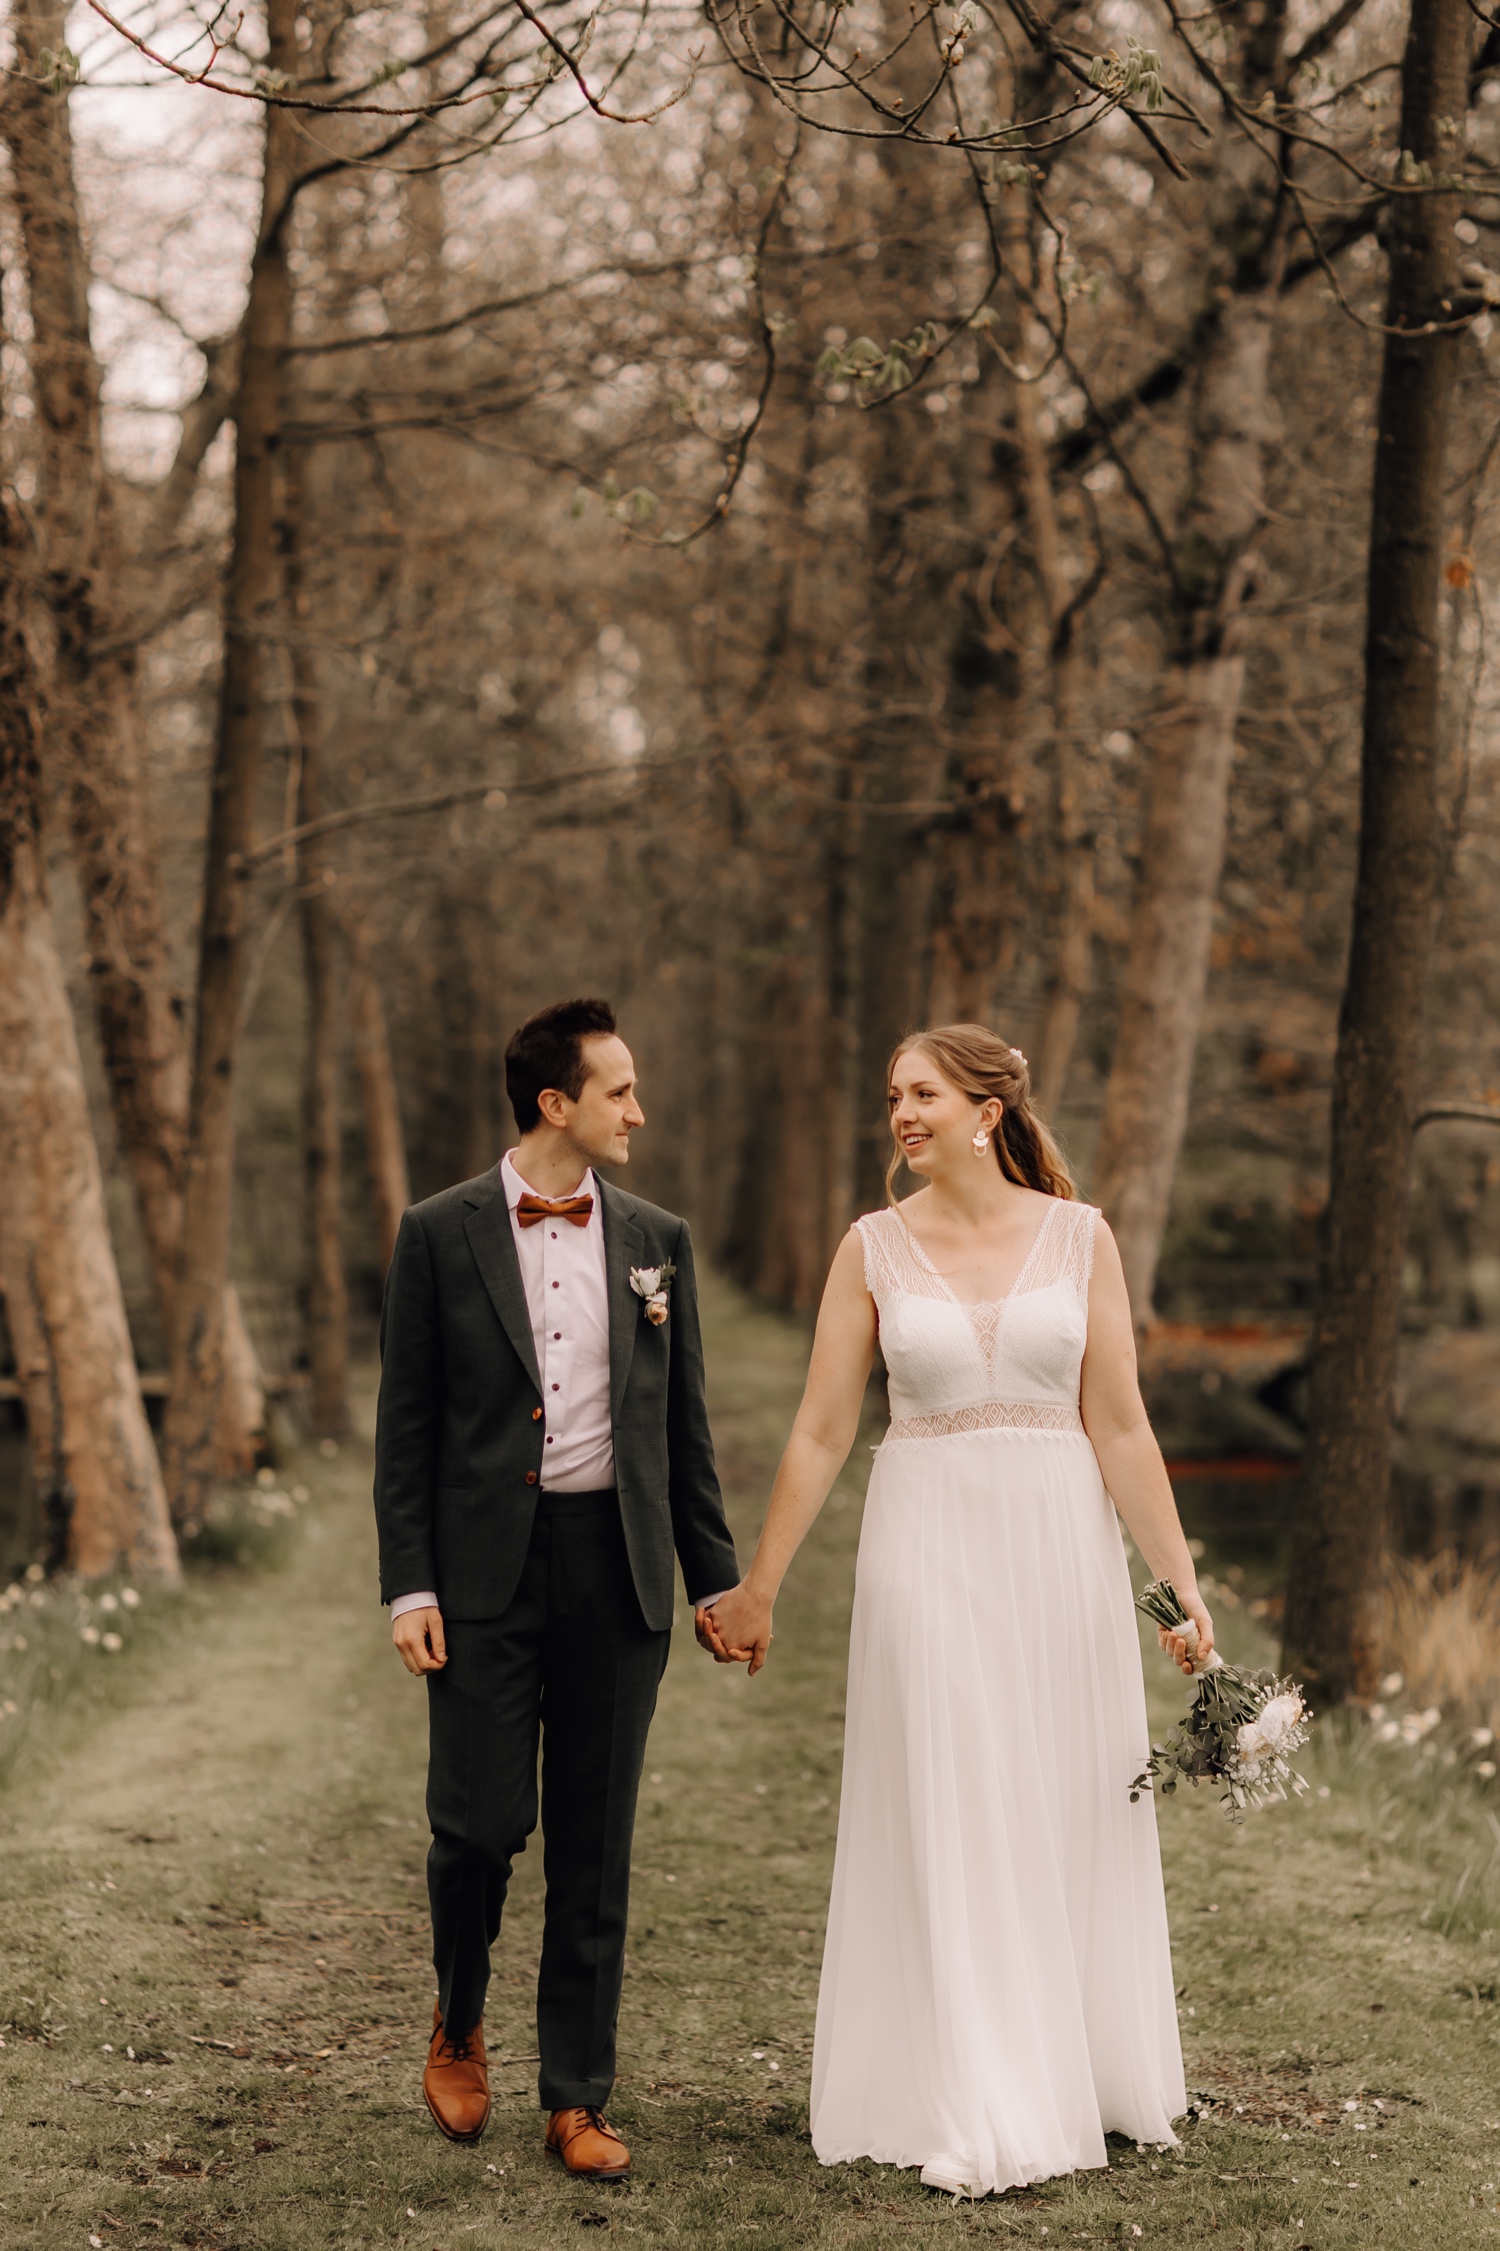 Huwelijksfotograaf Limburg - bruidspaar wandelt tussen de bomen